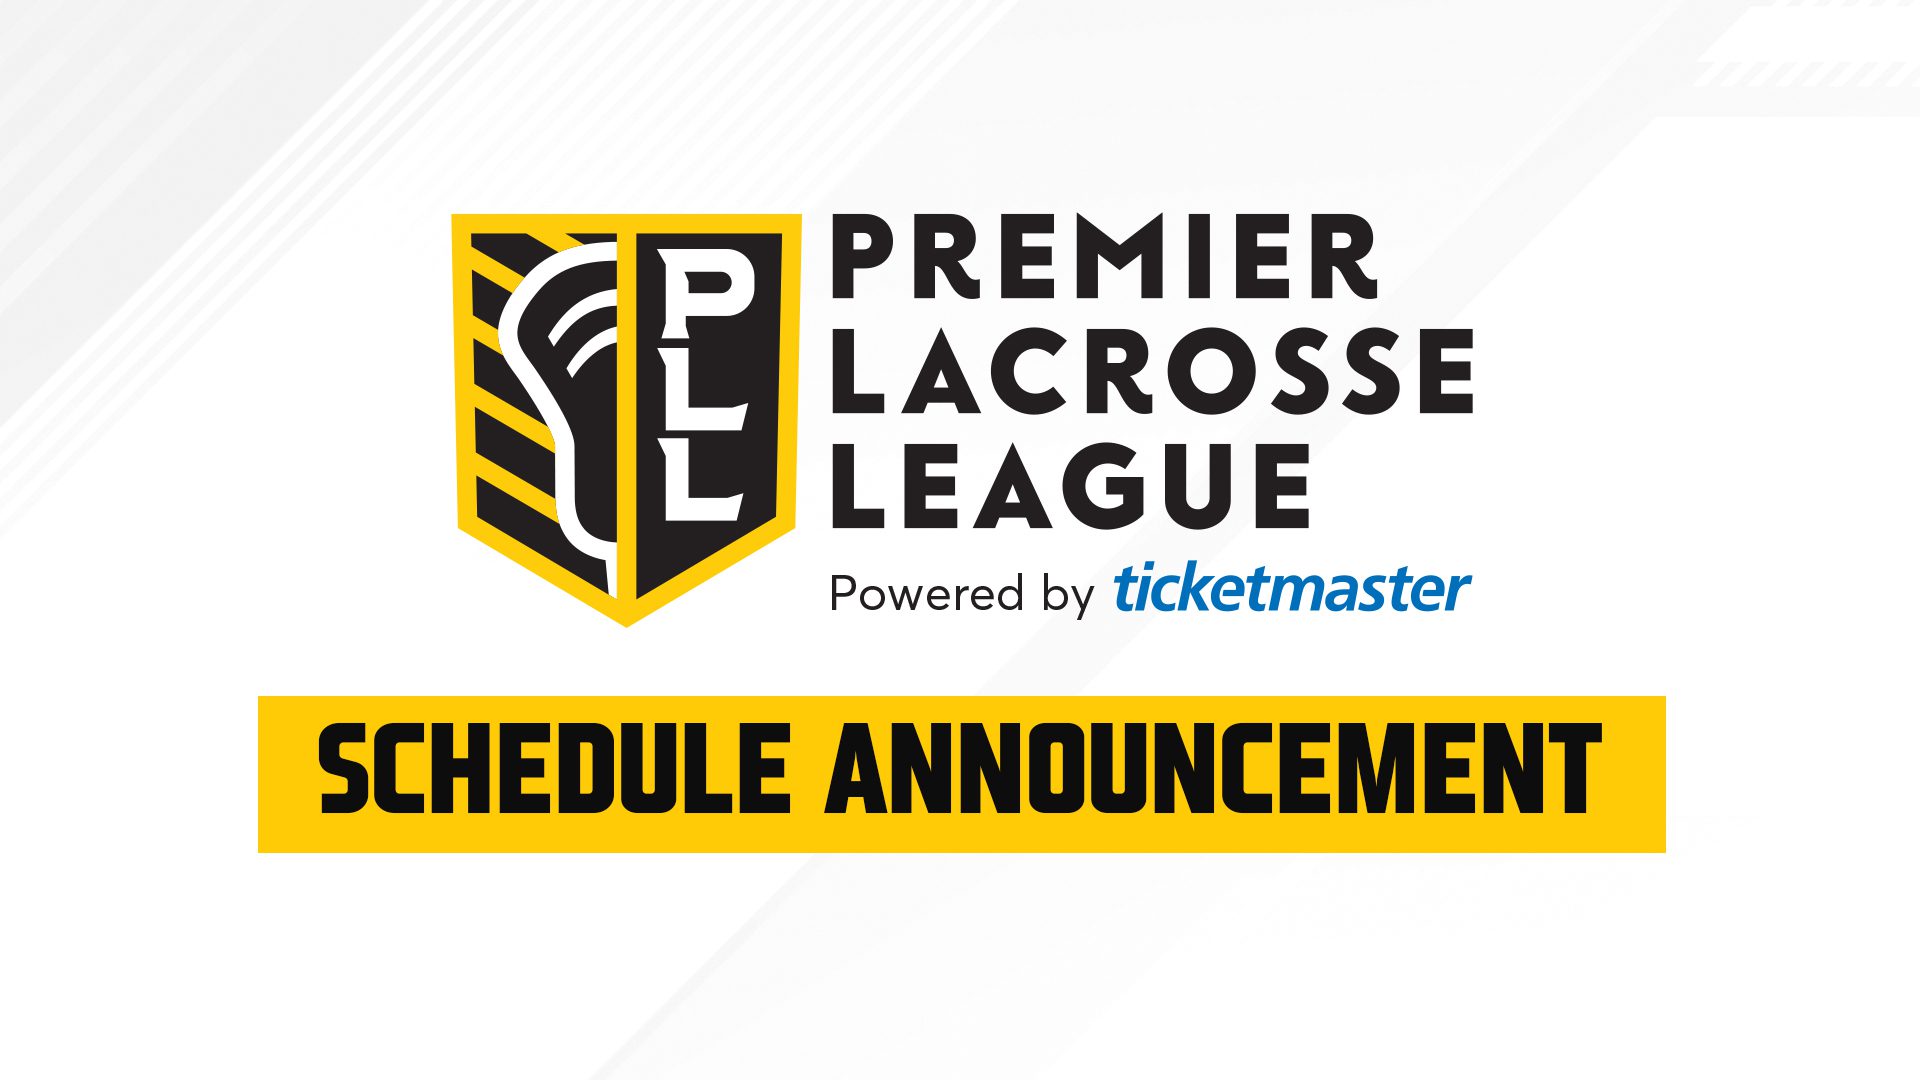 Premier Lacrosse League Schedule - Premier Lacrosse League